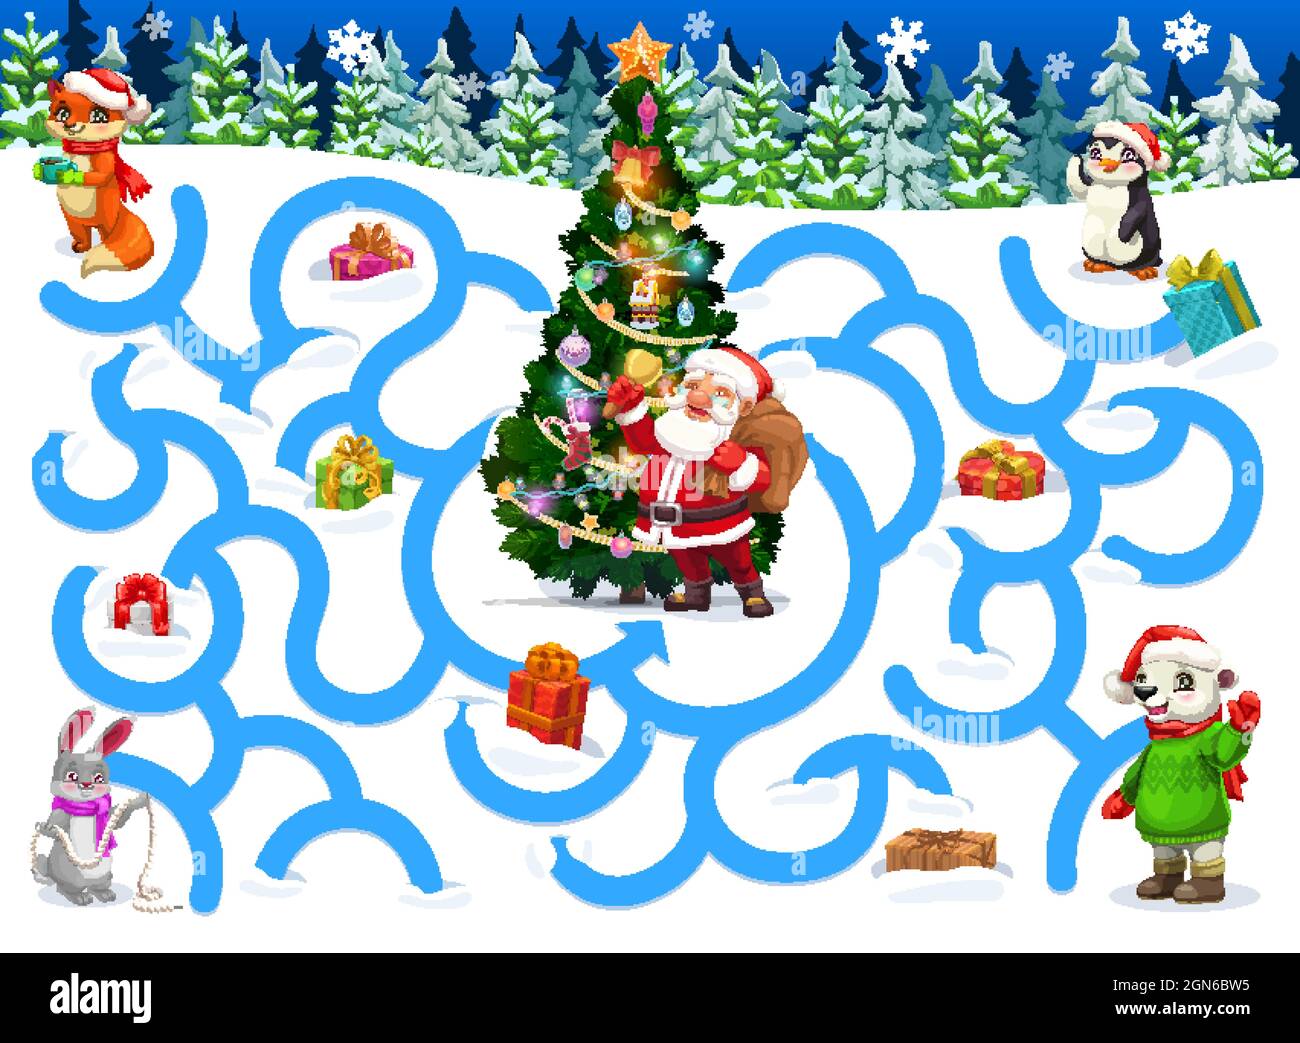 Juegos de Navidad para niños con personajes de dibujos animados de  animales. Los niños encuentran ejercicio en el camino, actividad de juego  de laberinto. Santa sonando campana cerca de árbol de Navidad,